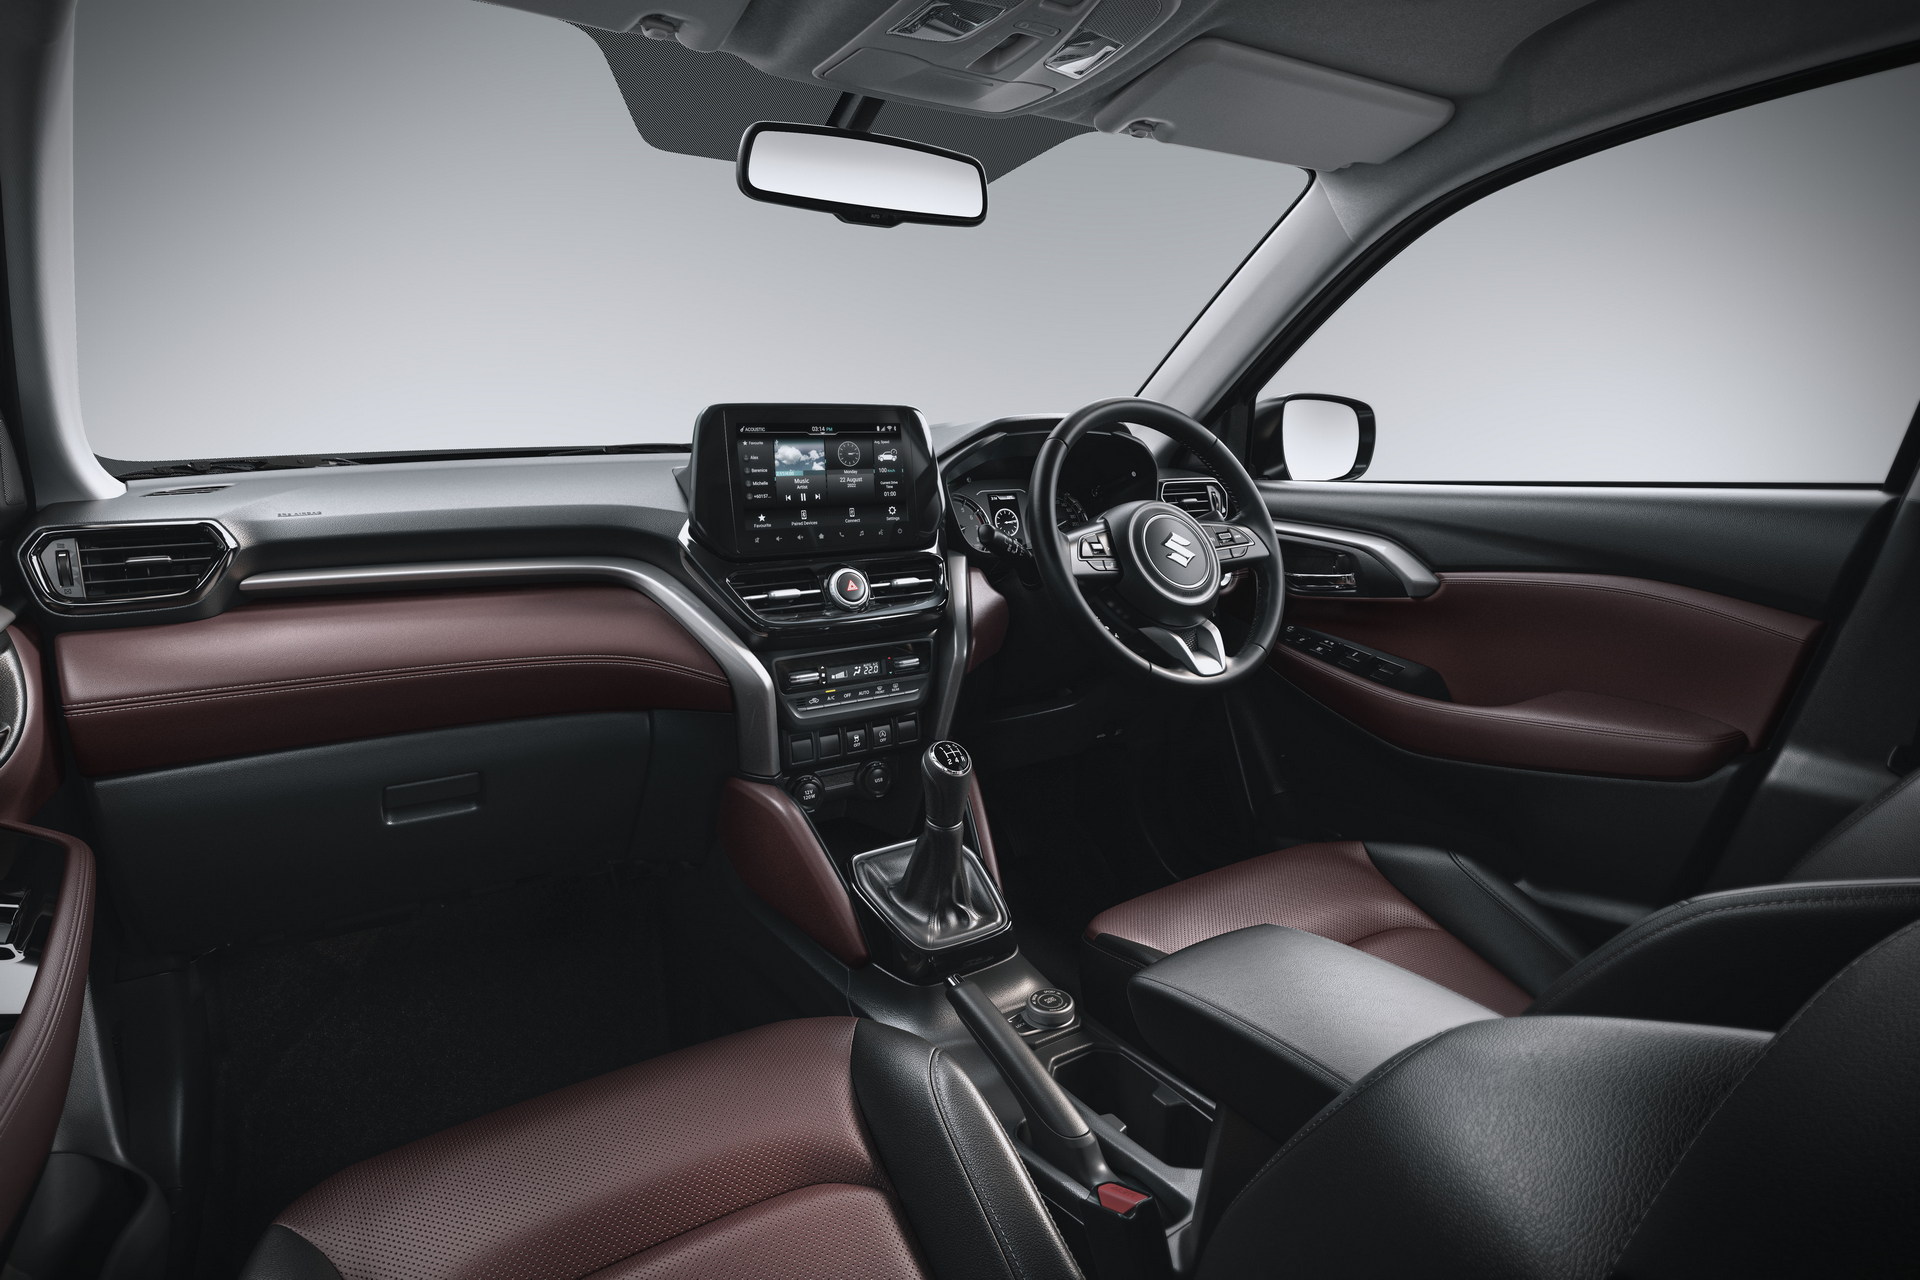 NEW 2023 Suzuki Vitara - OVERVIEW Walkaround interior & exterior 